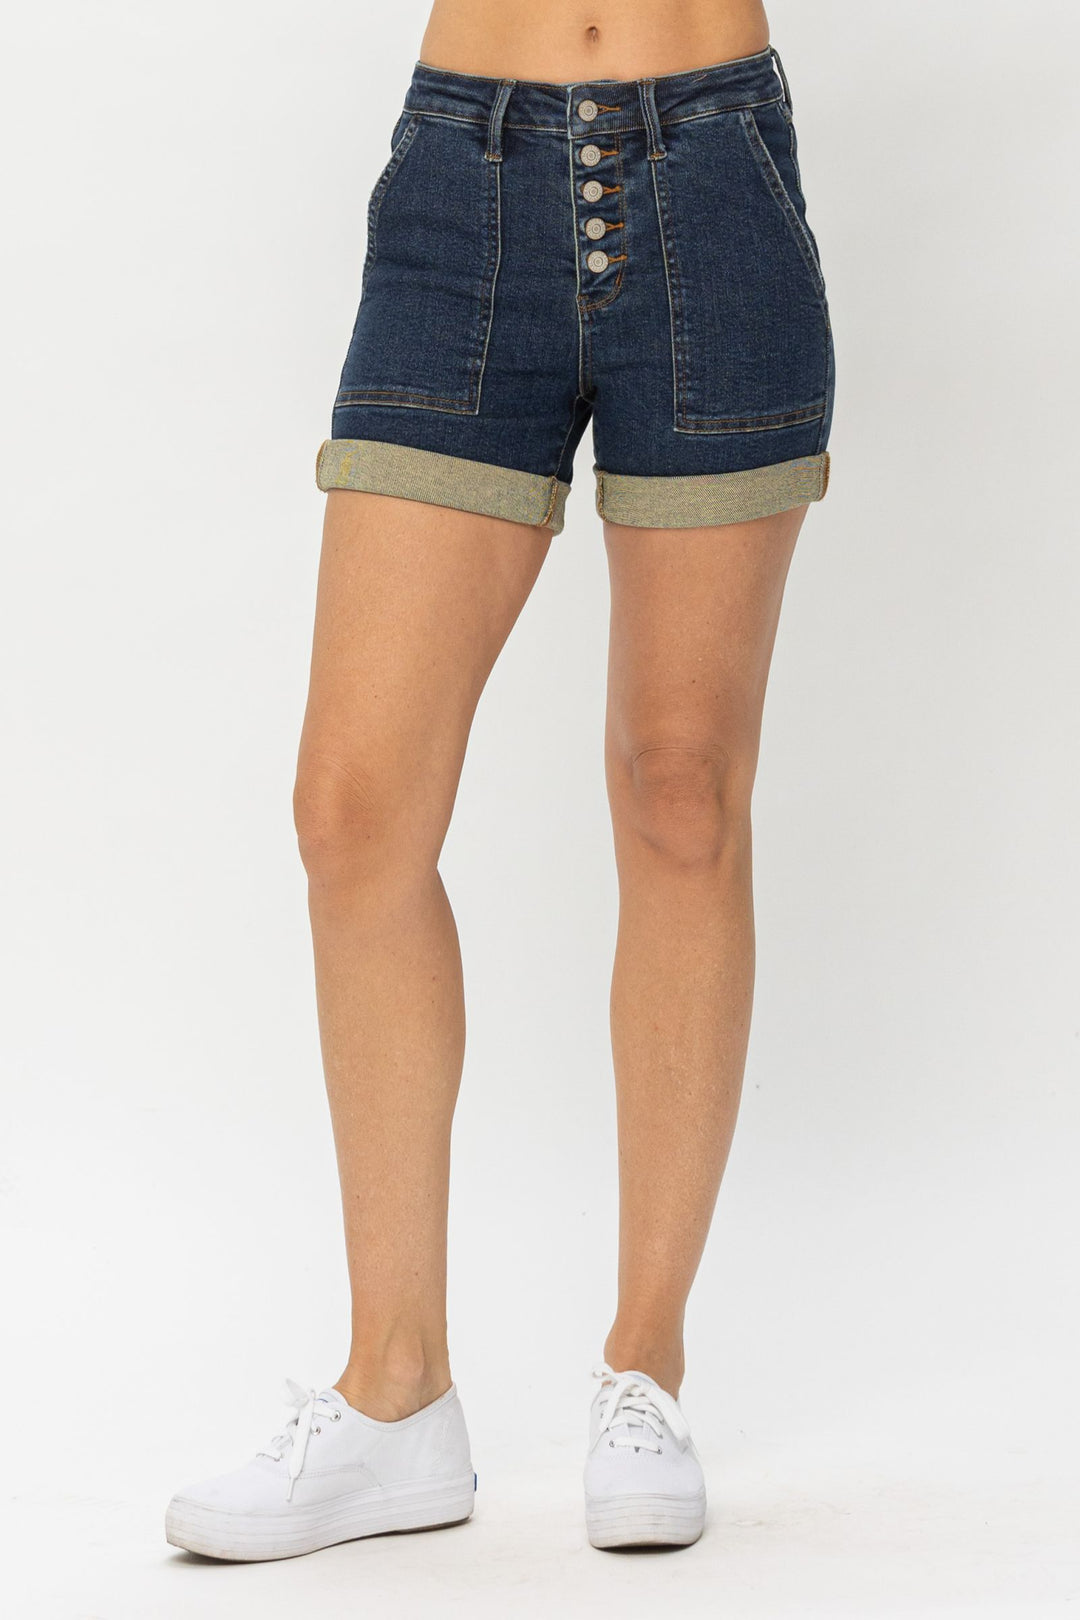 Judy Blue High Waist Button-fly Cuffed Trouser Shorts